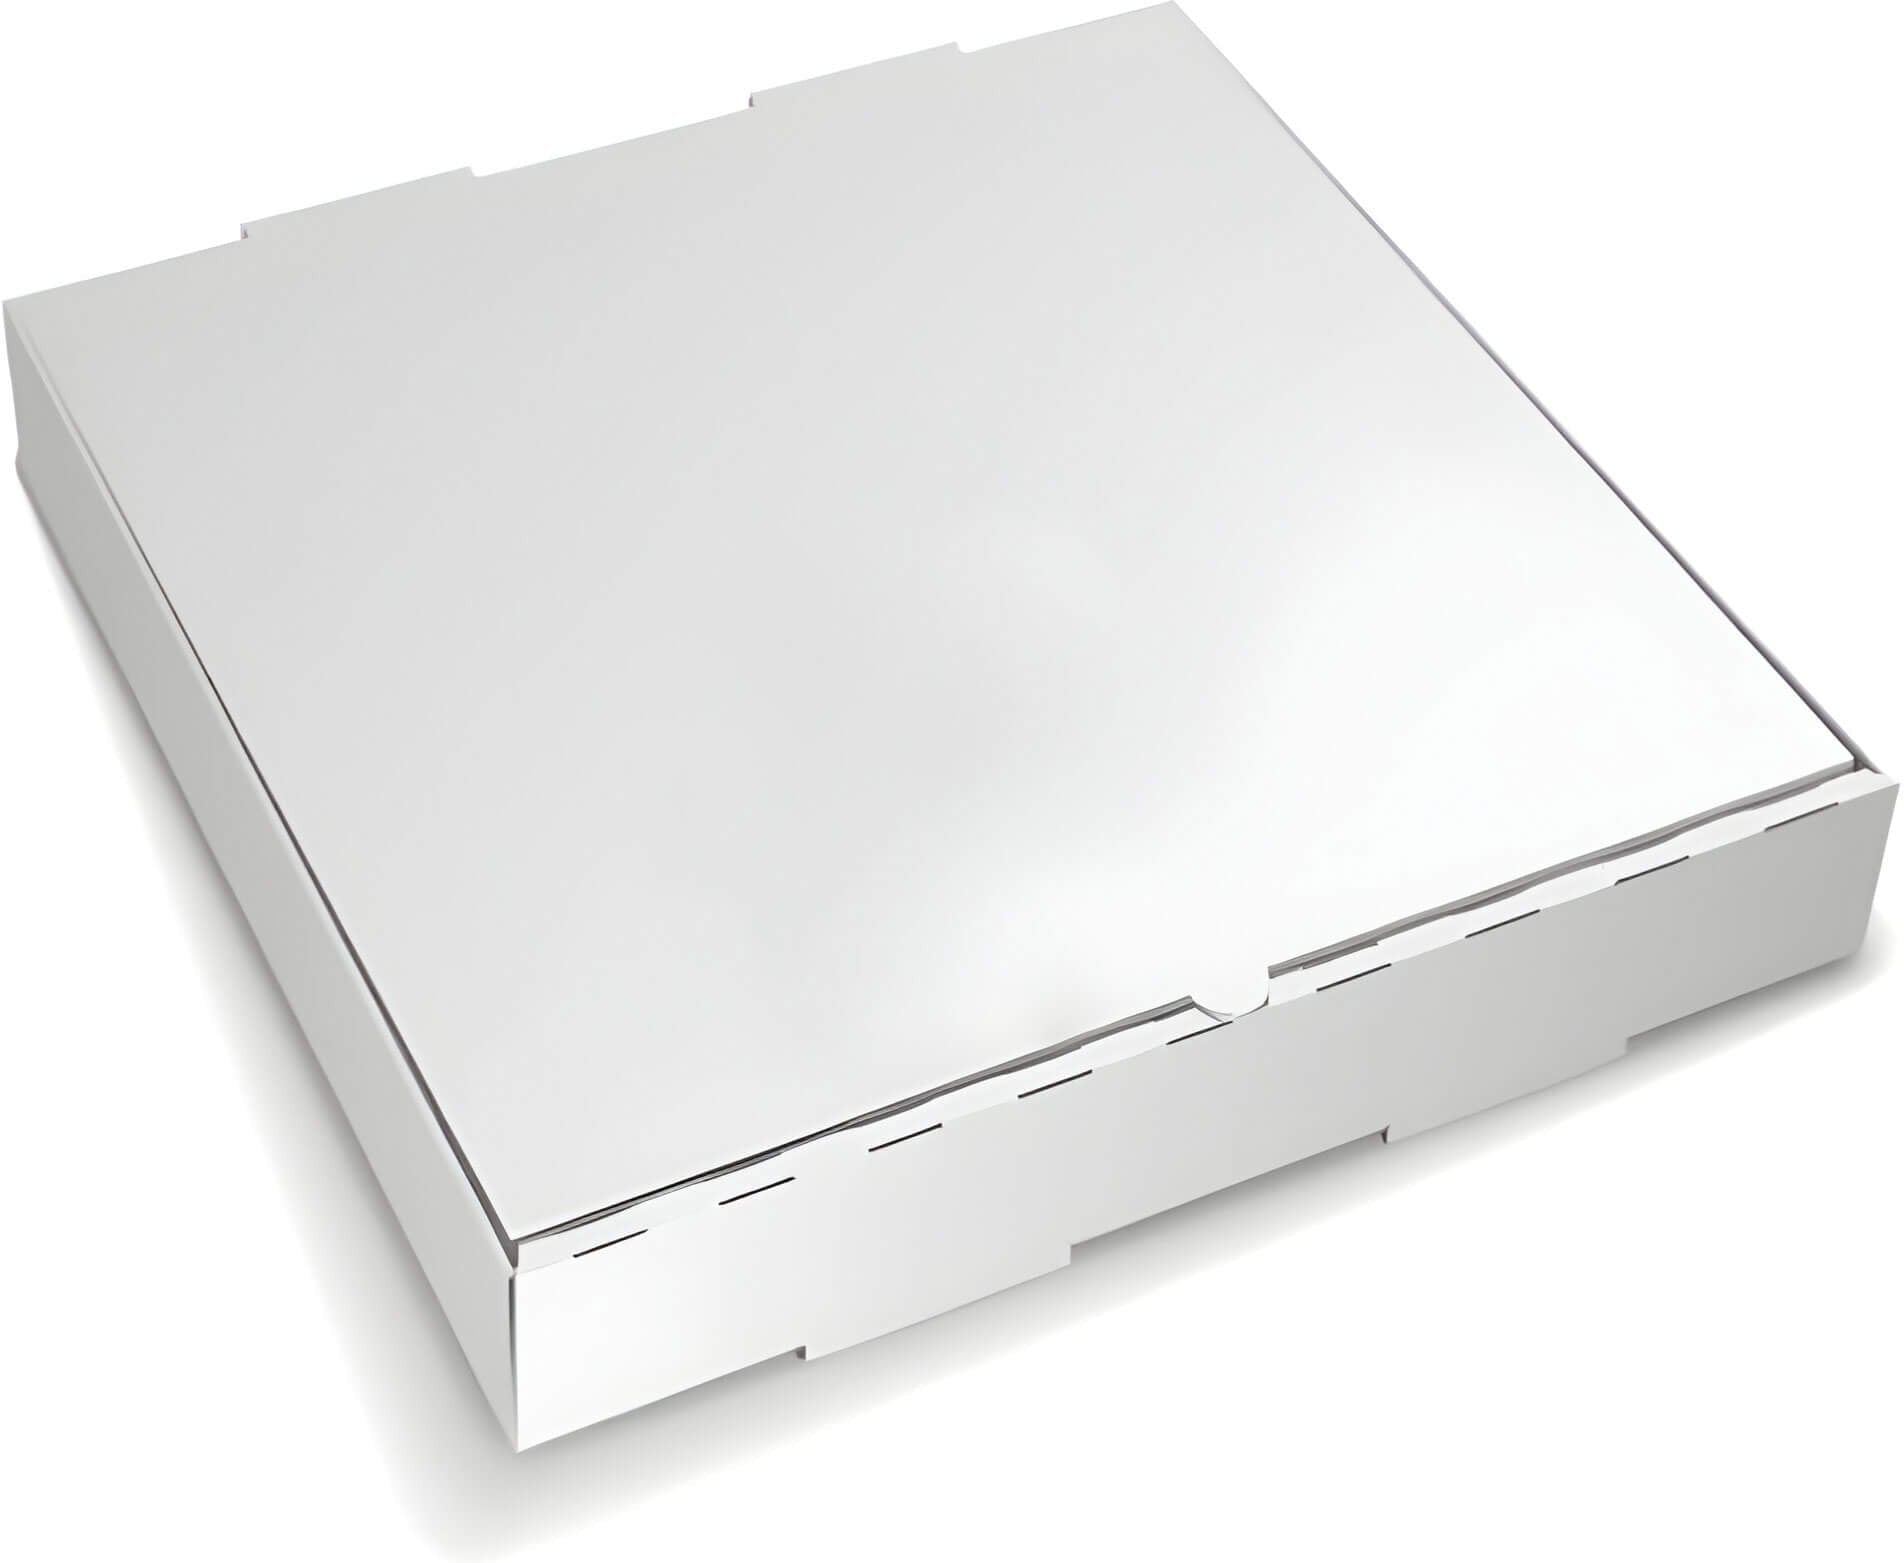 RiteBox - 12" x 12" White Cardboard Pizza Box, 50/bn - PB1212